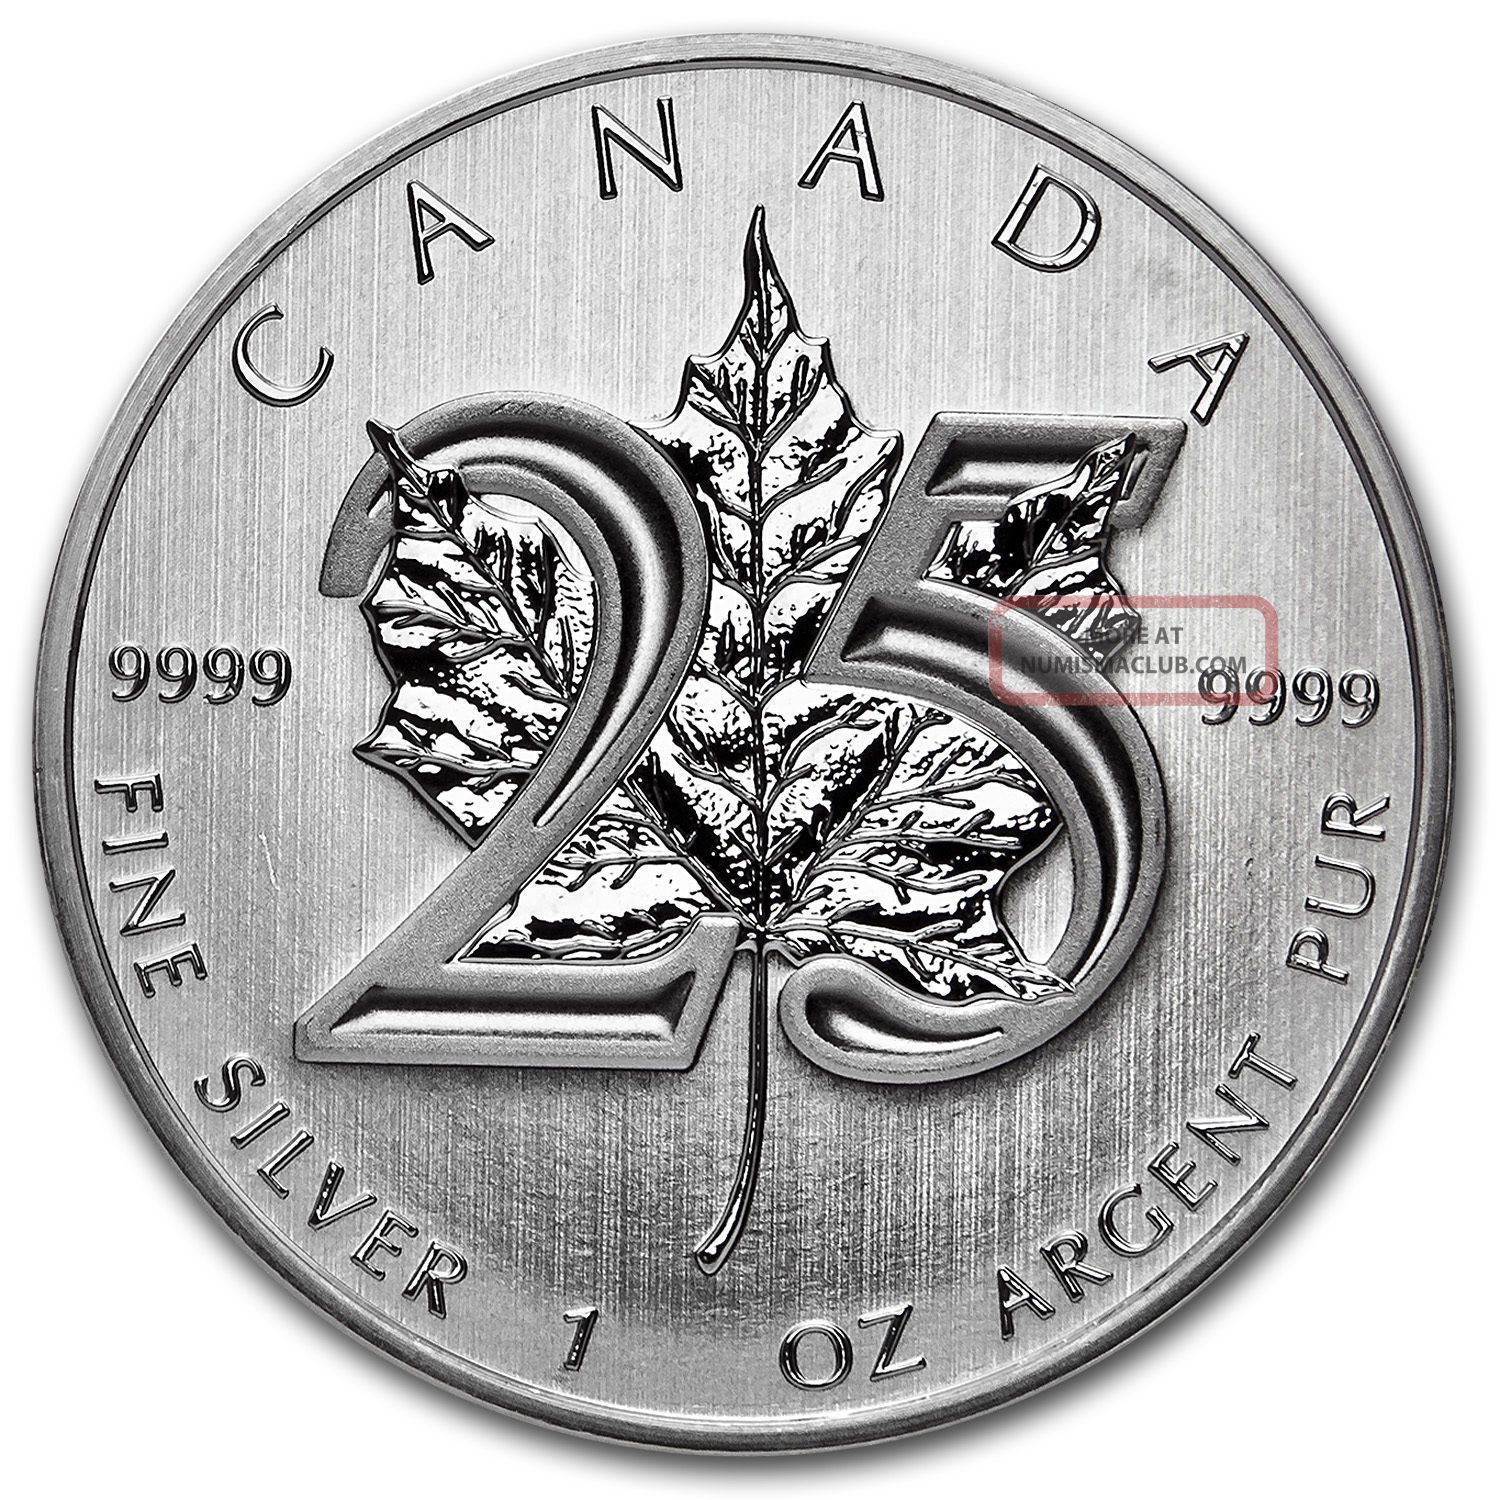 1 Oz Silver 2013 Canadian Maple Leaf - - - - 25th Anniversary. 9999 Fs